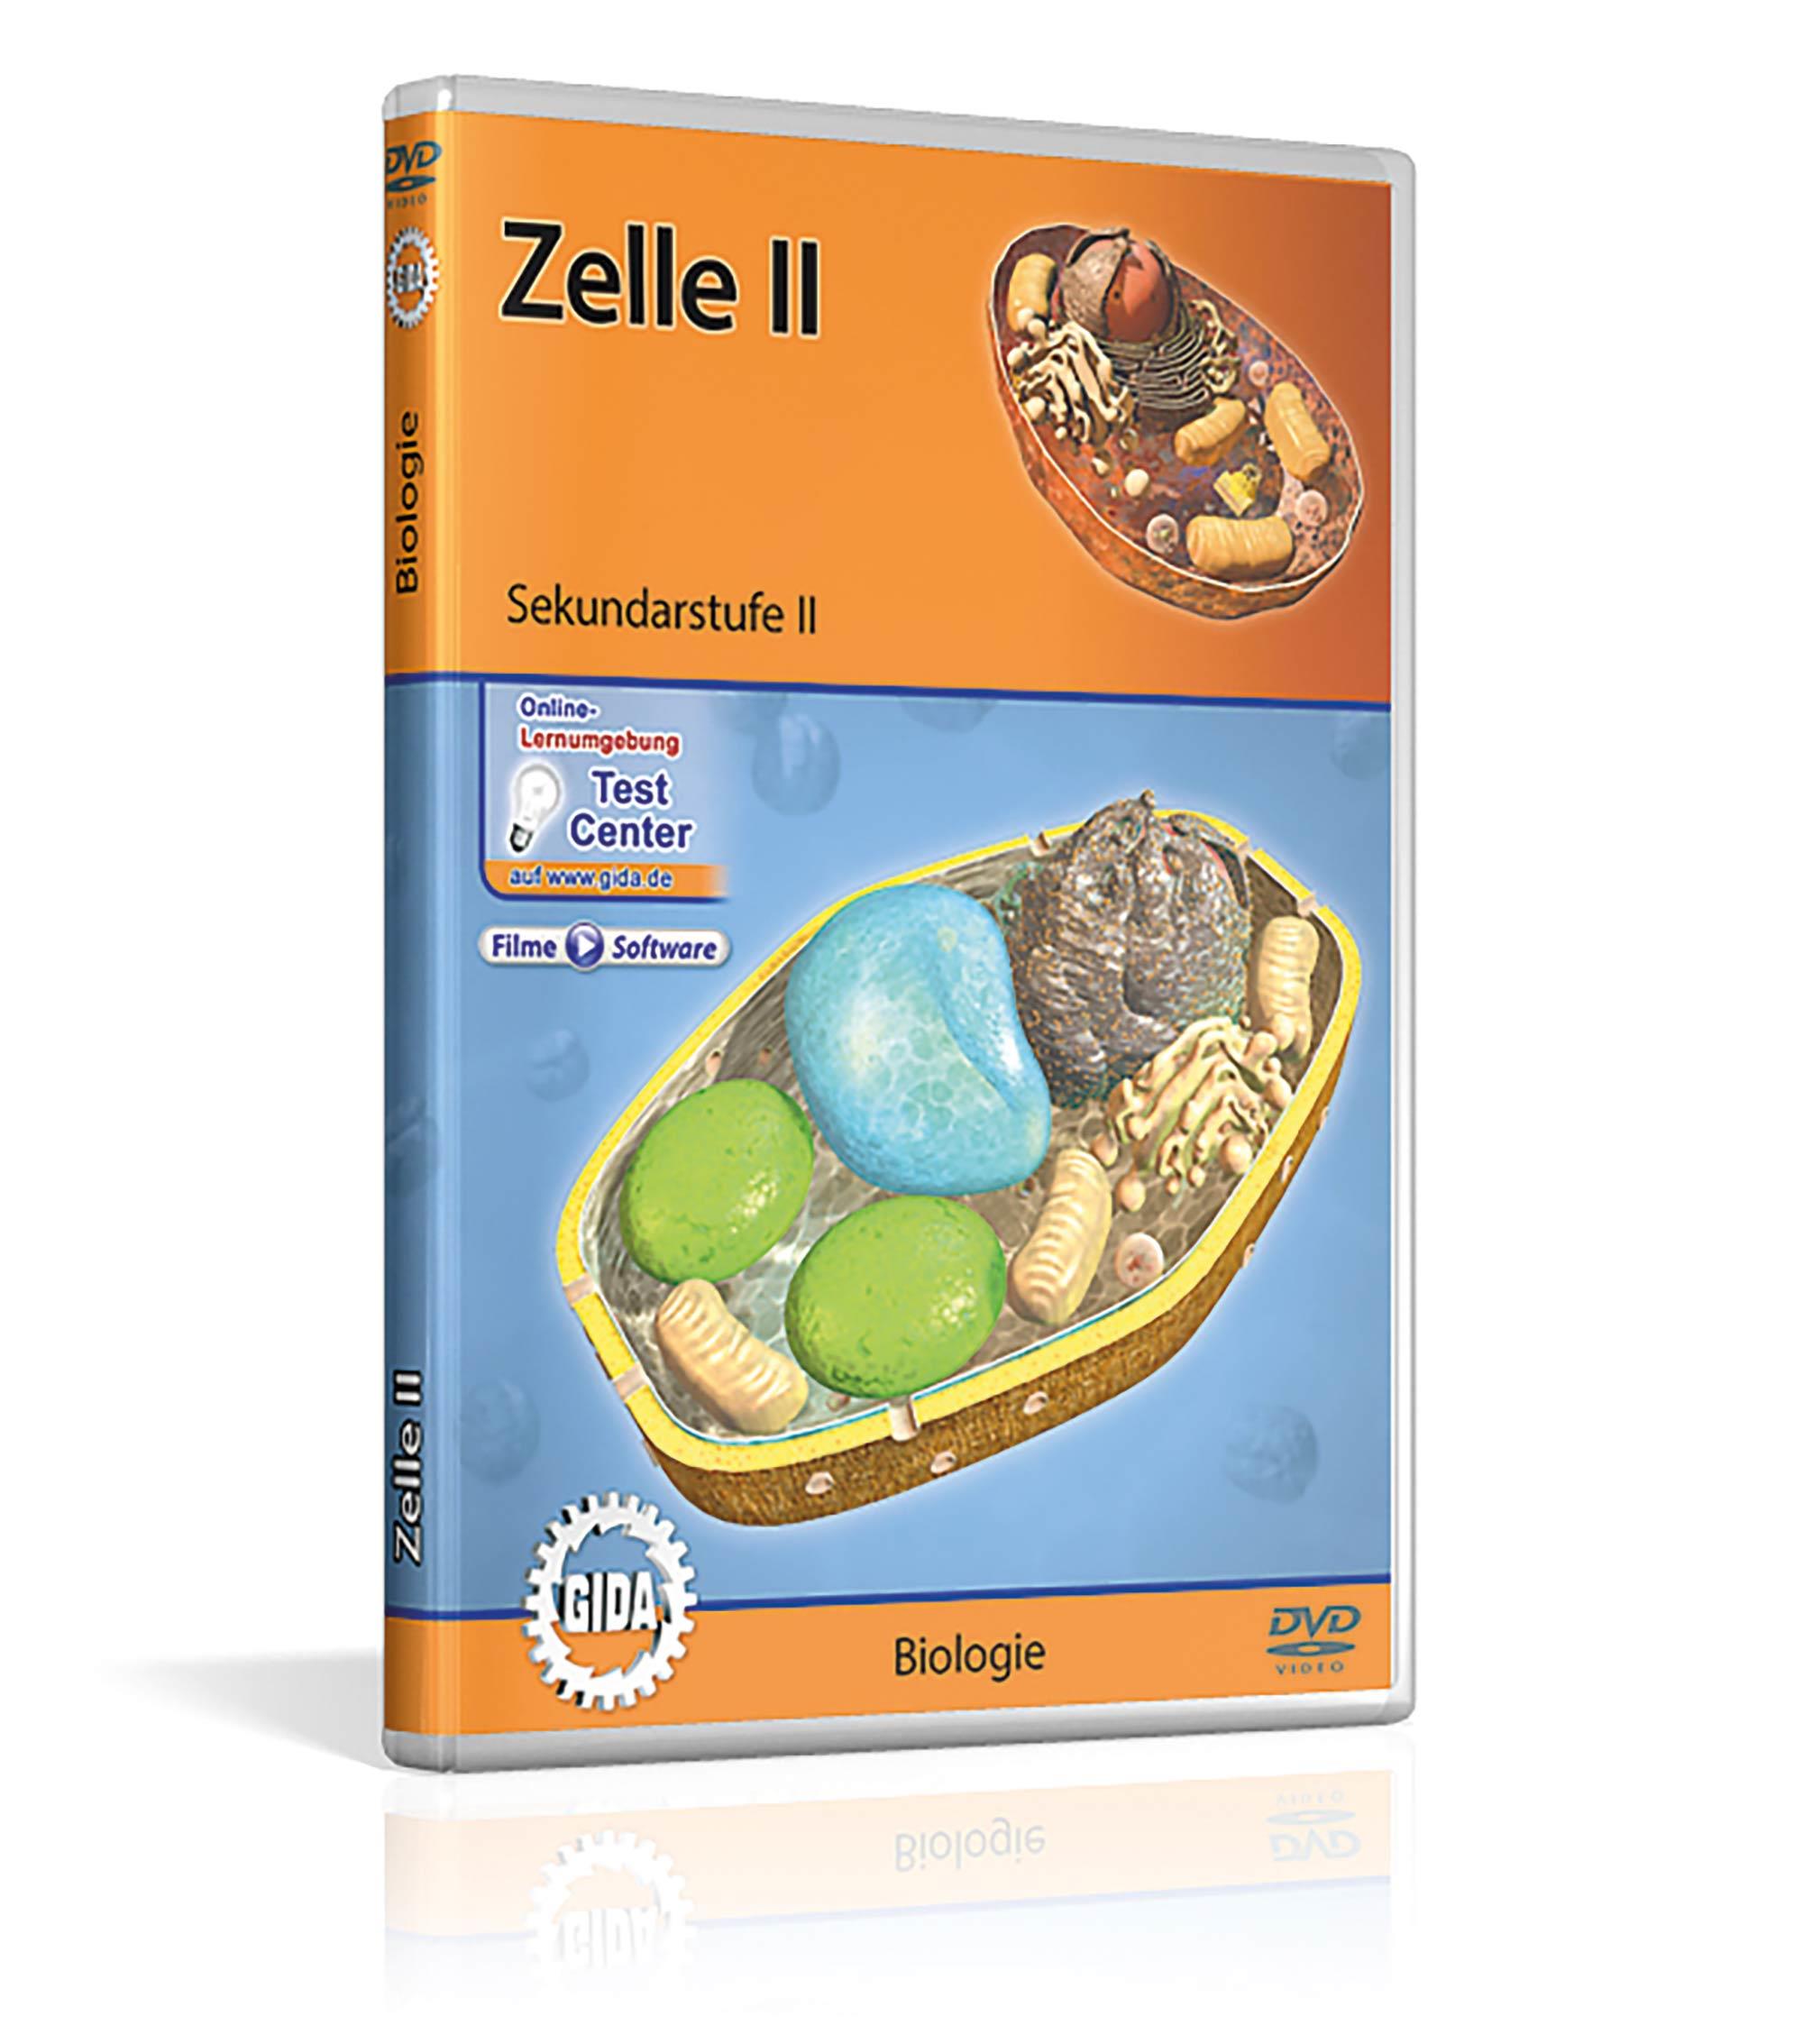 Zelle II